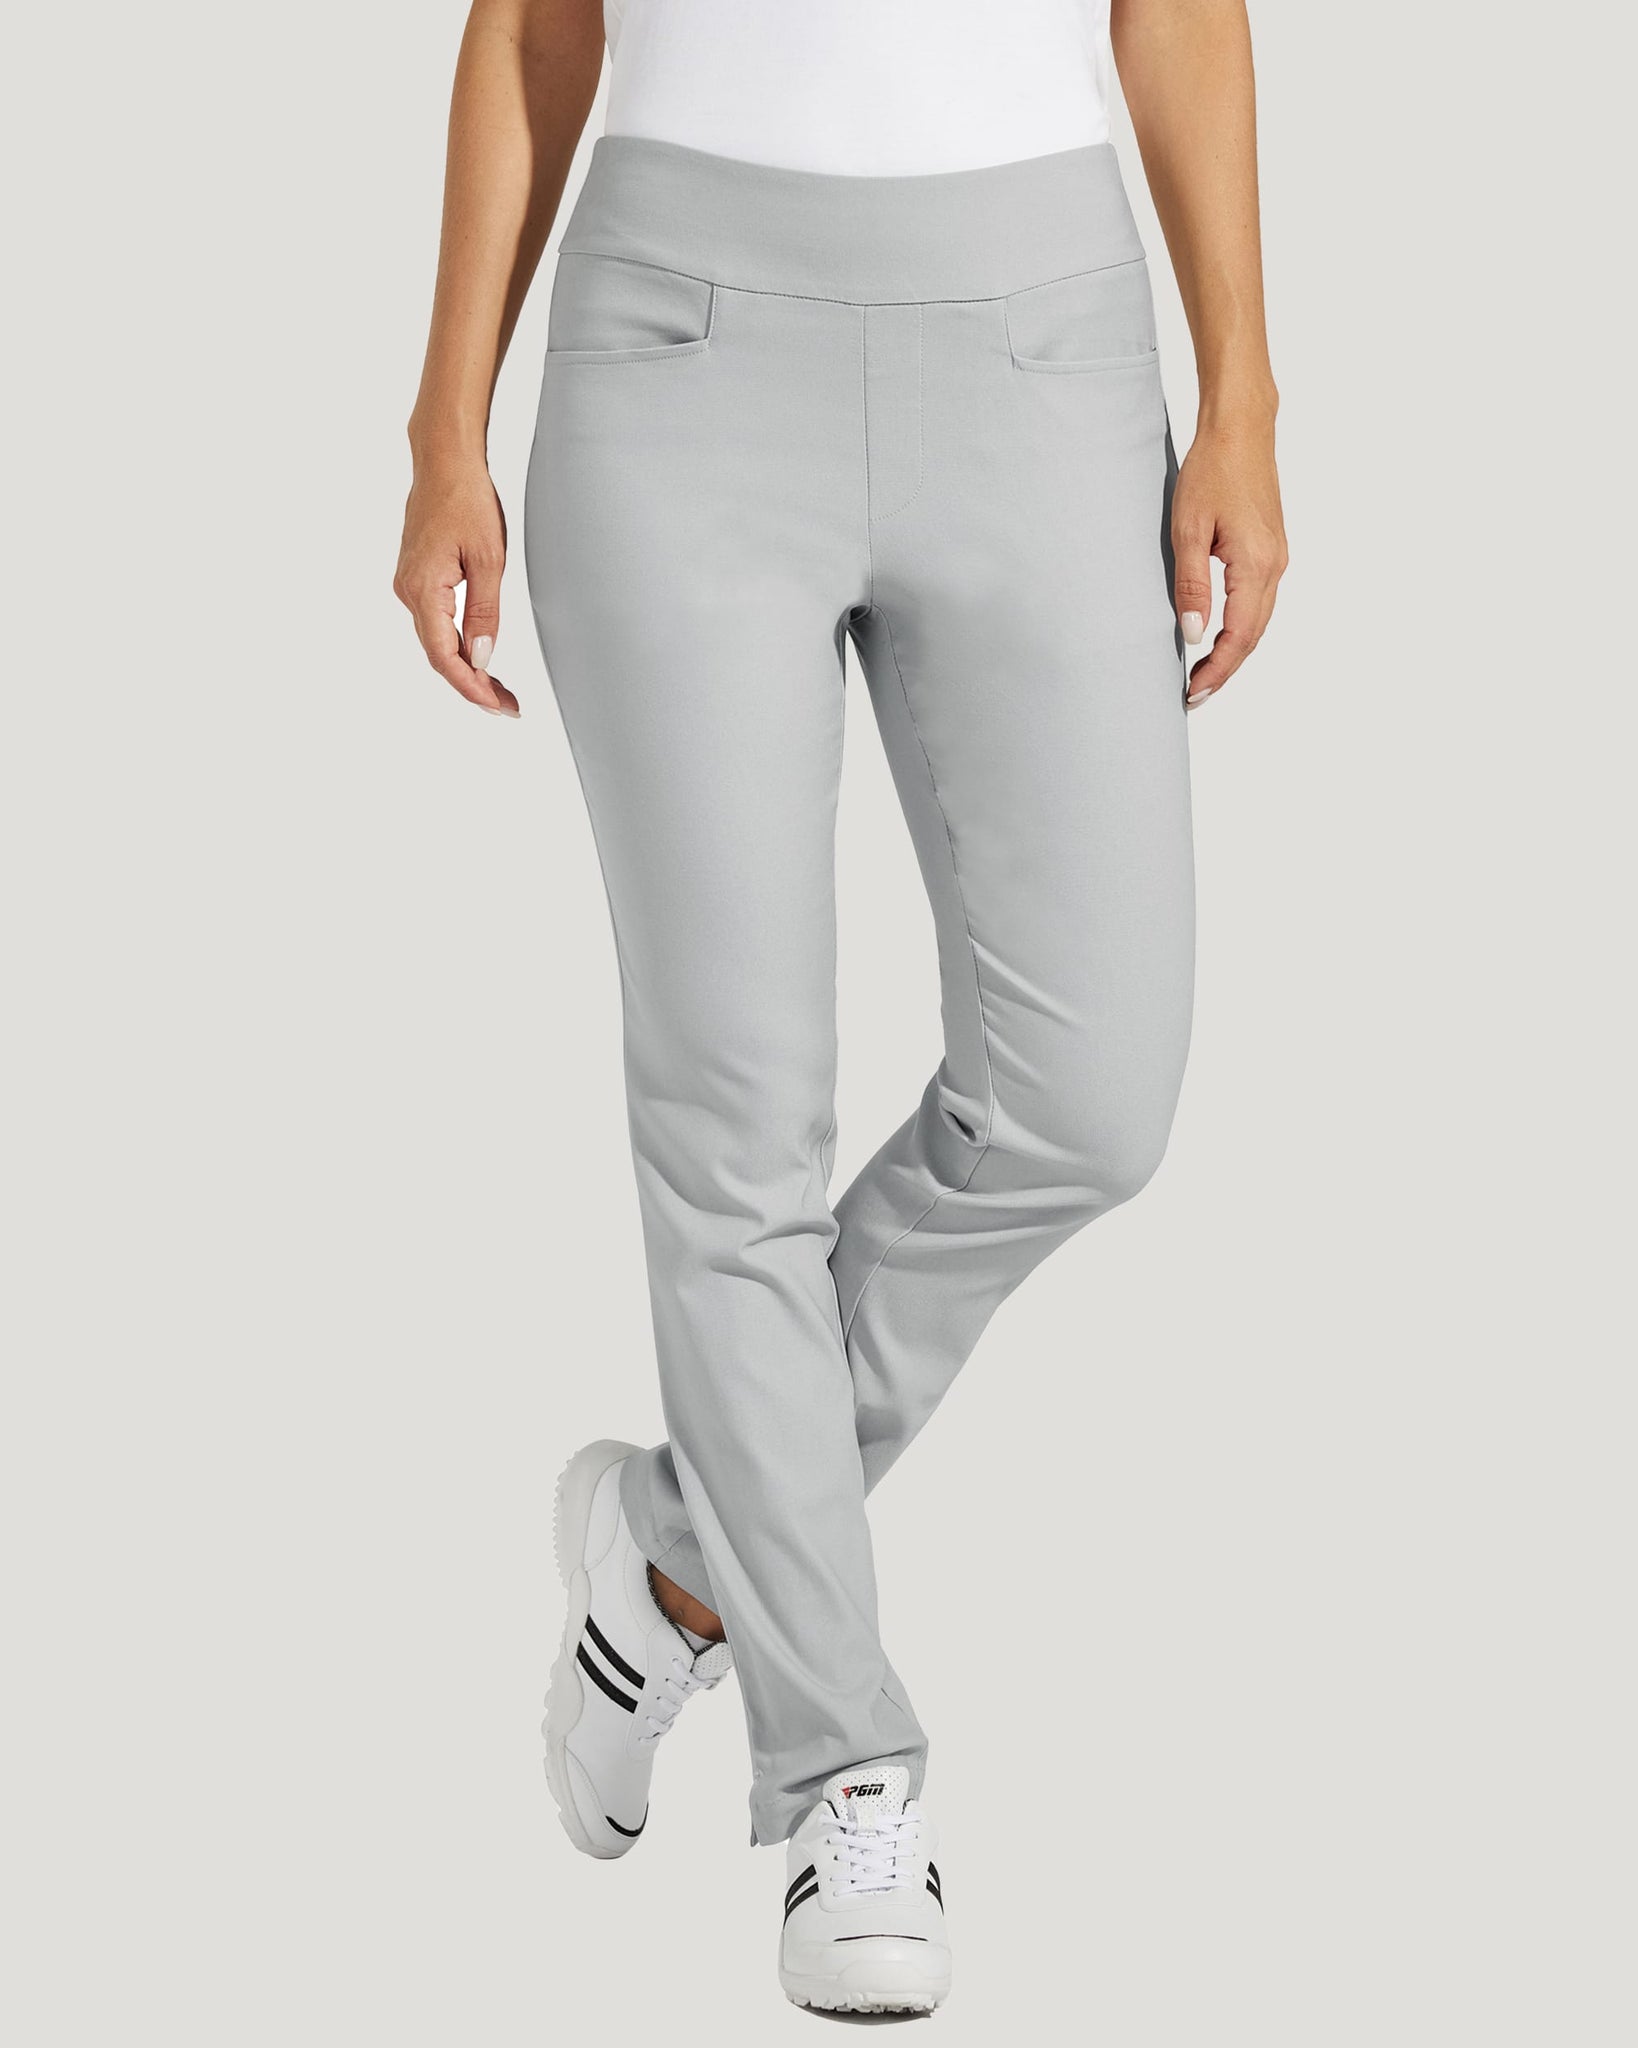 Women's Golf Pull-On Pants_LightGray_model3